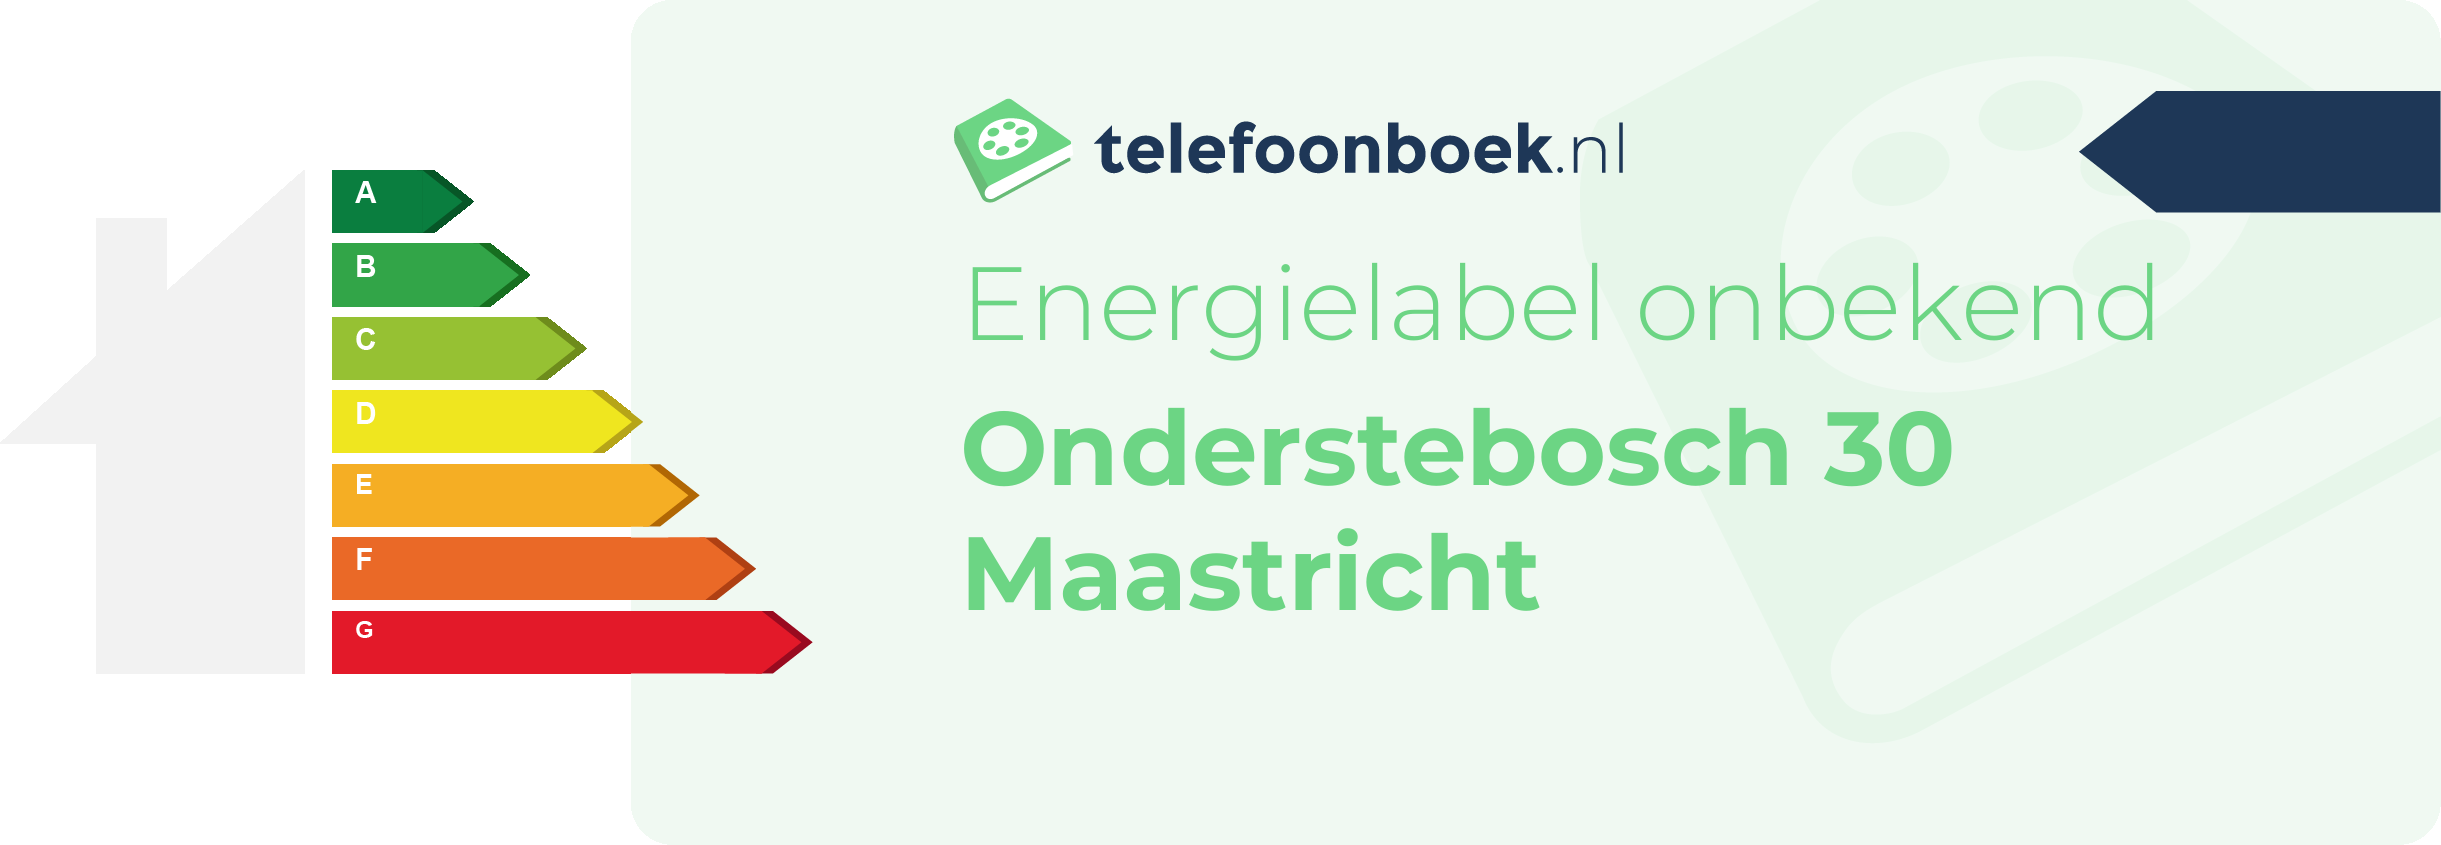 Energielabel Onderstebosch 30 Maastricht